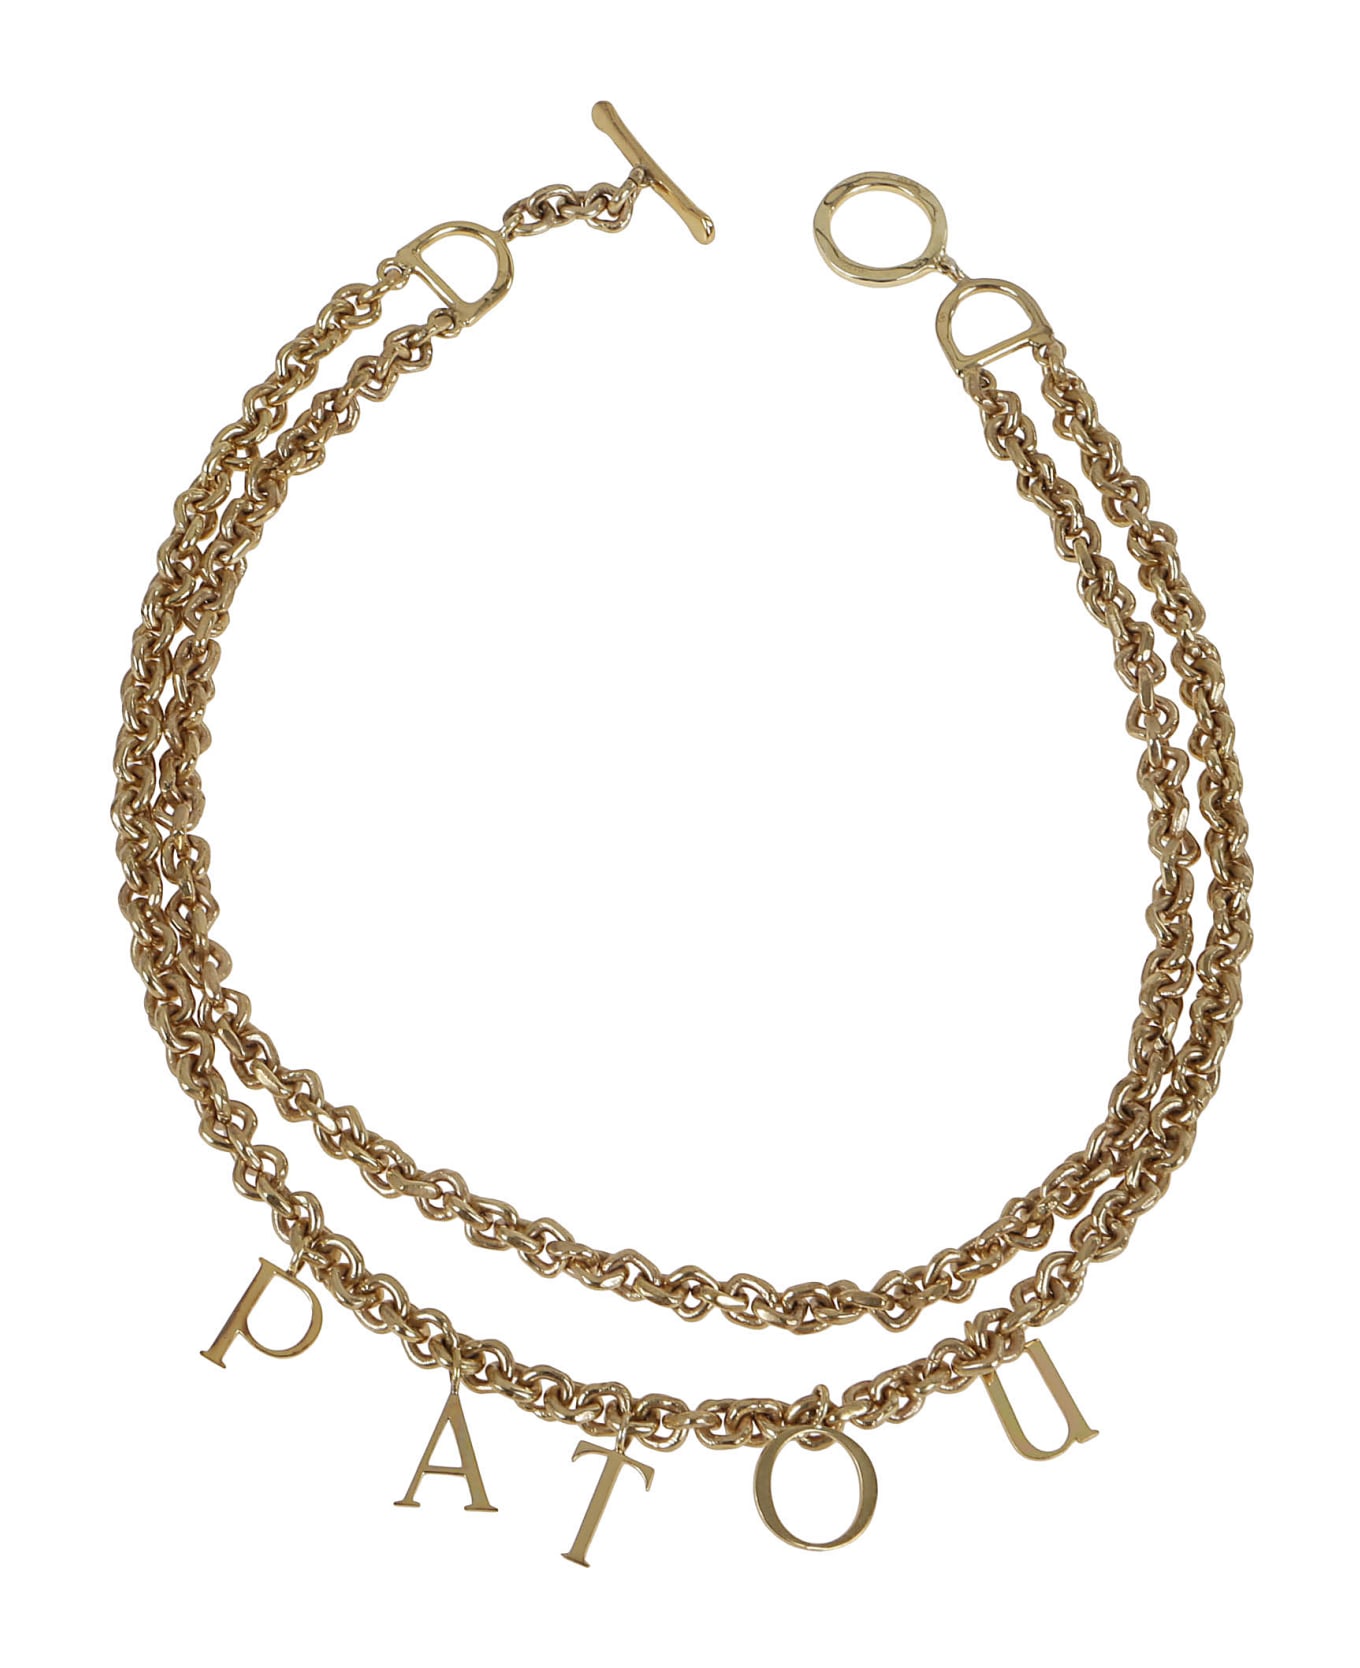 Patou Letters Double Necklace - G Gold